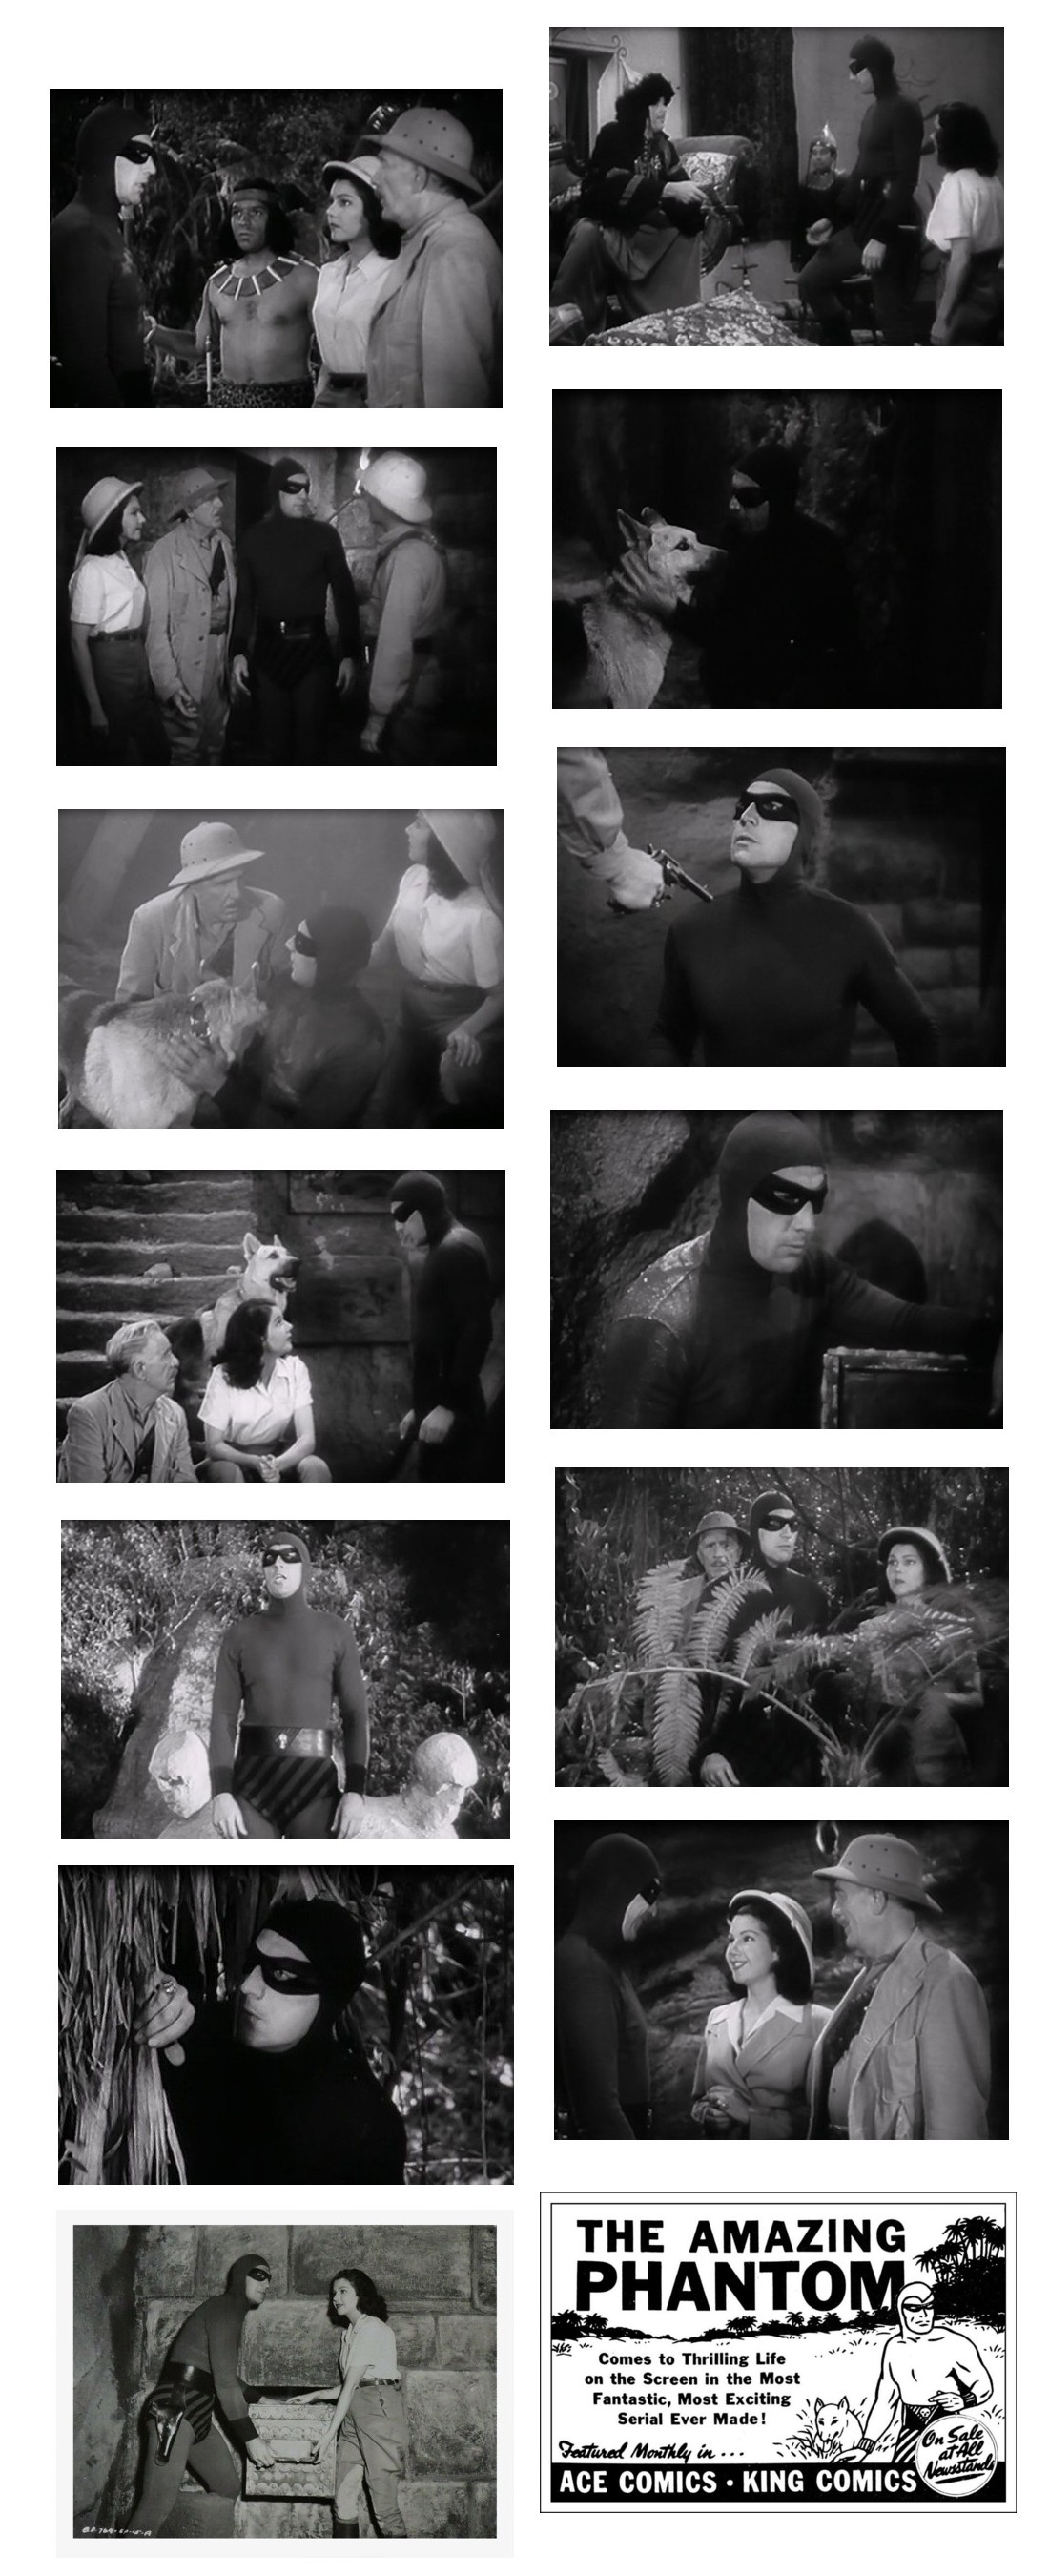 The Phantom screencaps